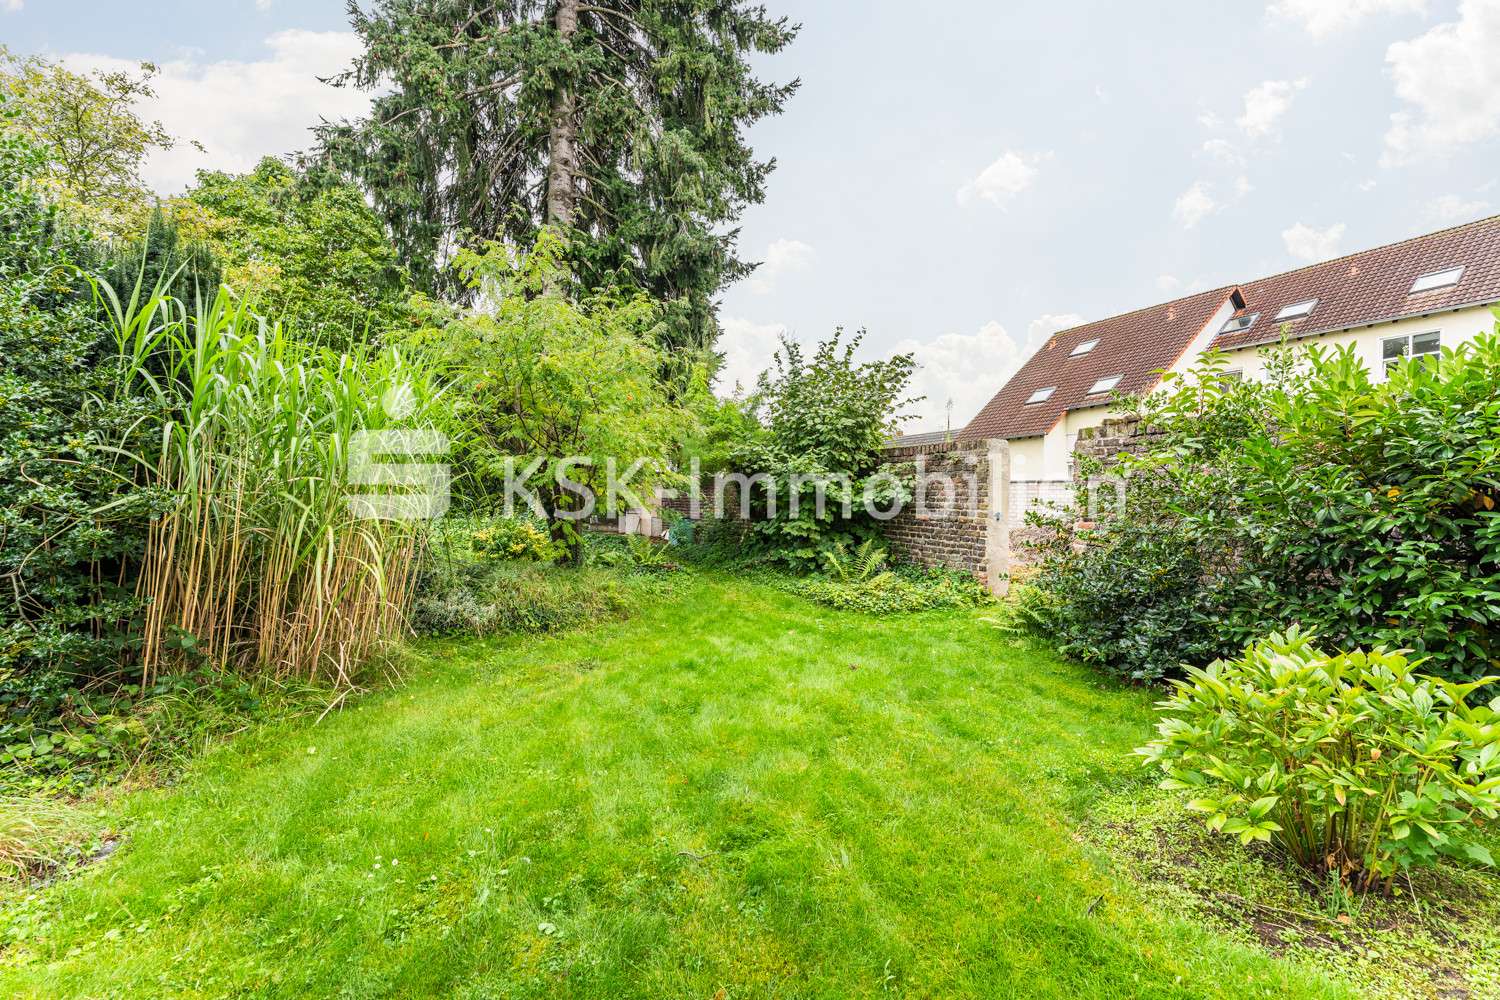 114358 Grundstück - Grundstück in 50735 Köln / Niehl mit 1180m² kaufen